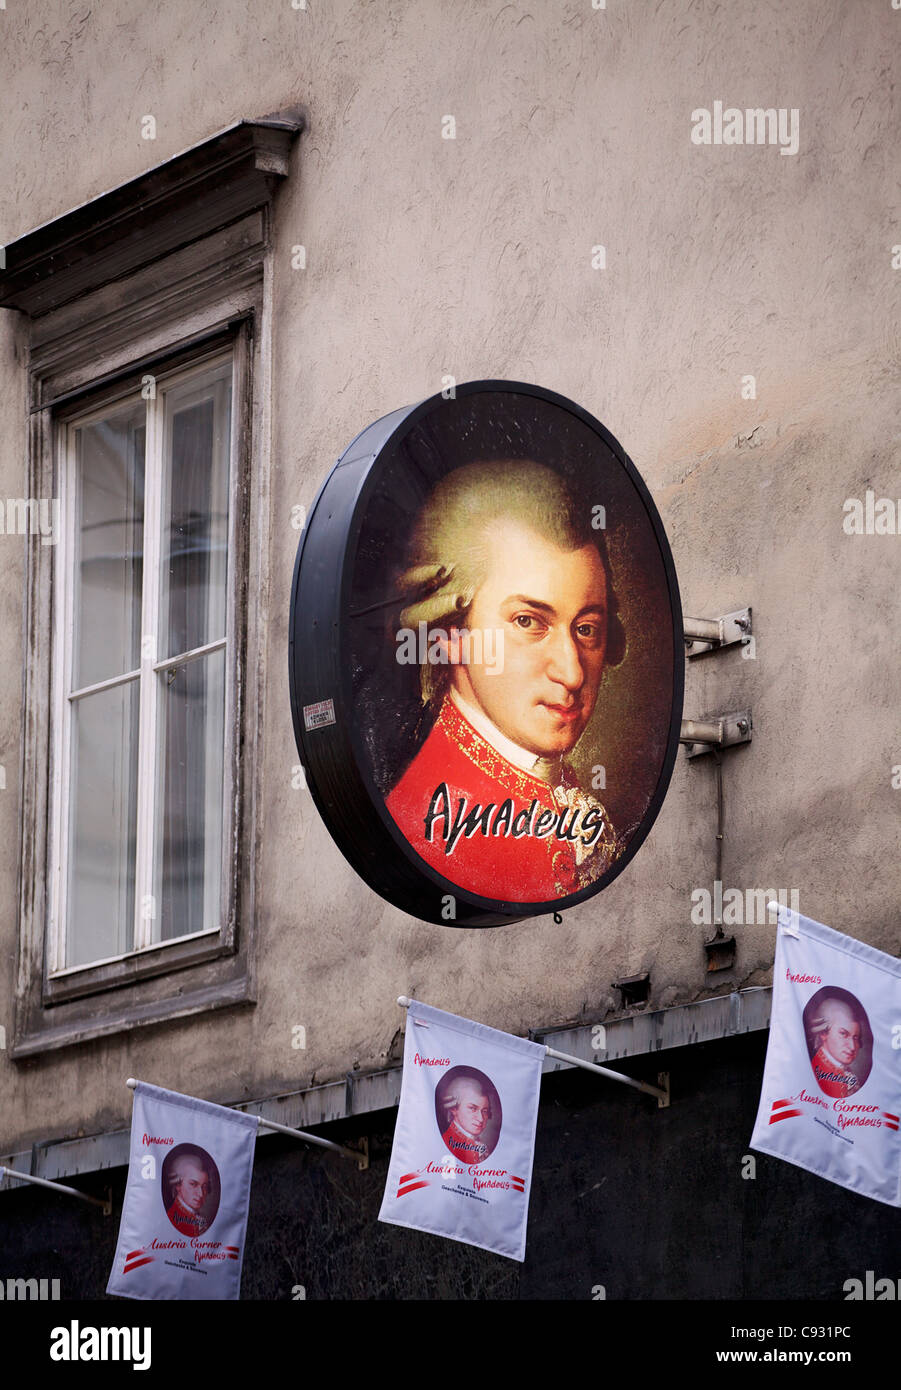 Vienne, Autriche ; une publicité avec la photo du célèbre compositeur autrichien Wolfgang Amadeus Mozart Banque D'Images